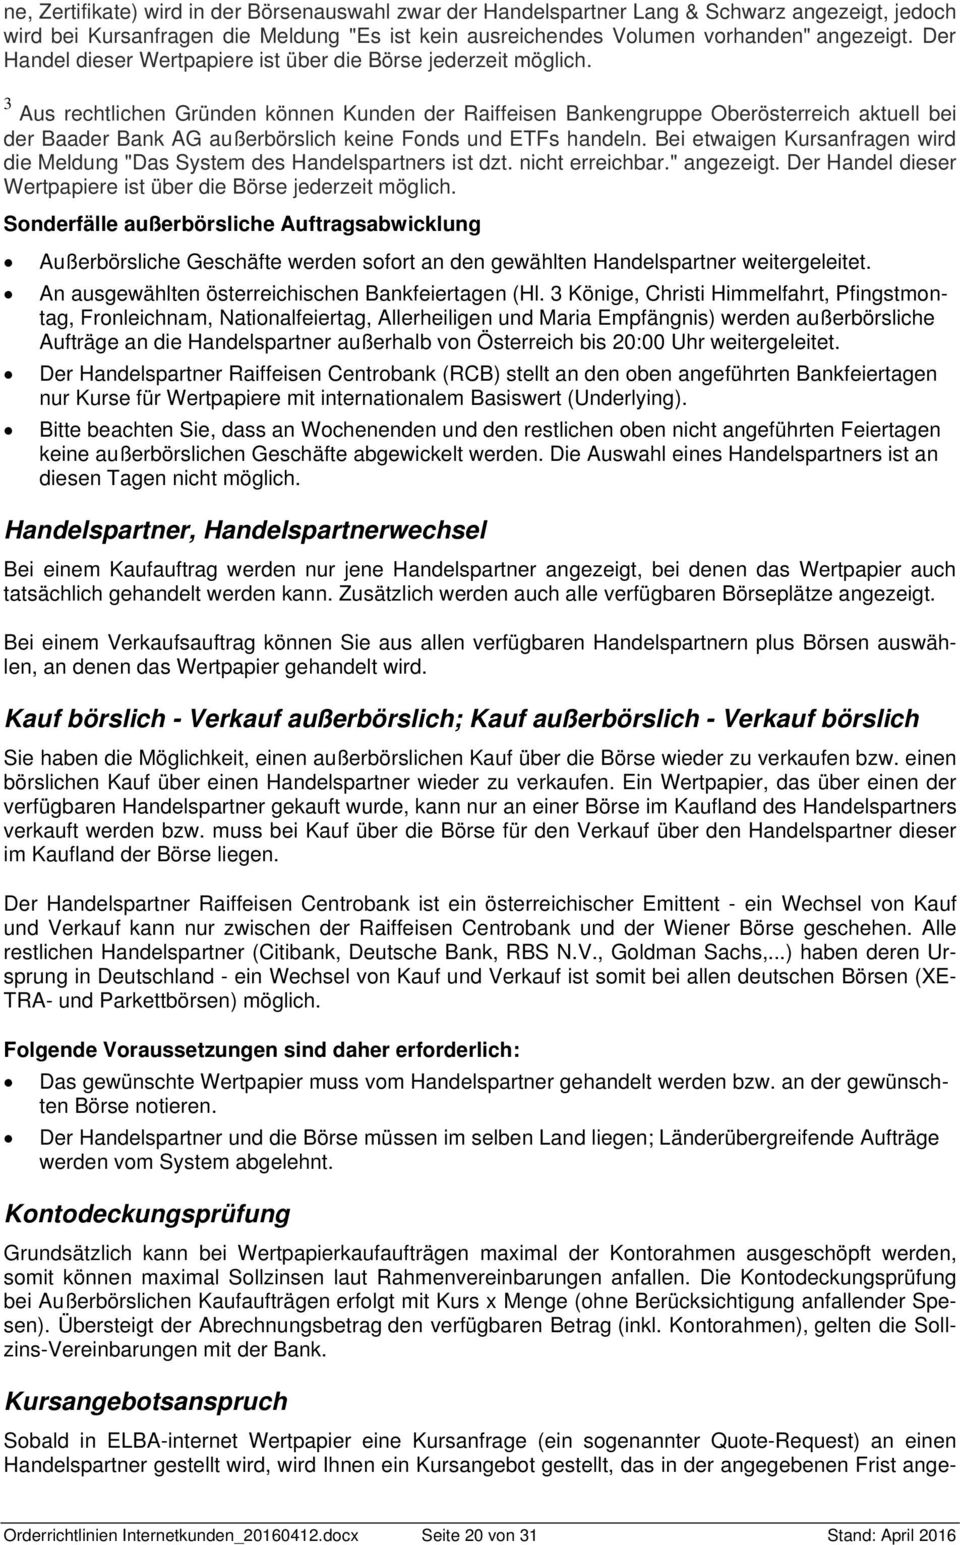 3 Aus rechtlichen Gründen können Kunden der Raiffeisen Bankengruppe Oberösterreich aktuell bei der Baader Bank AG außerbörslich keine Fonds und ETFs handeln.